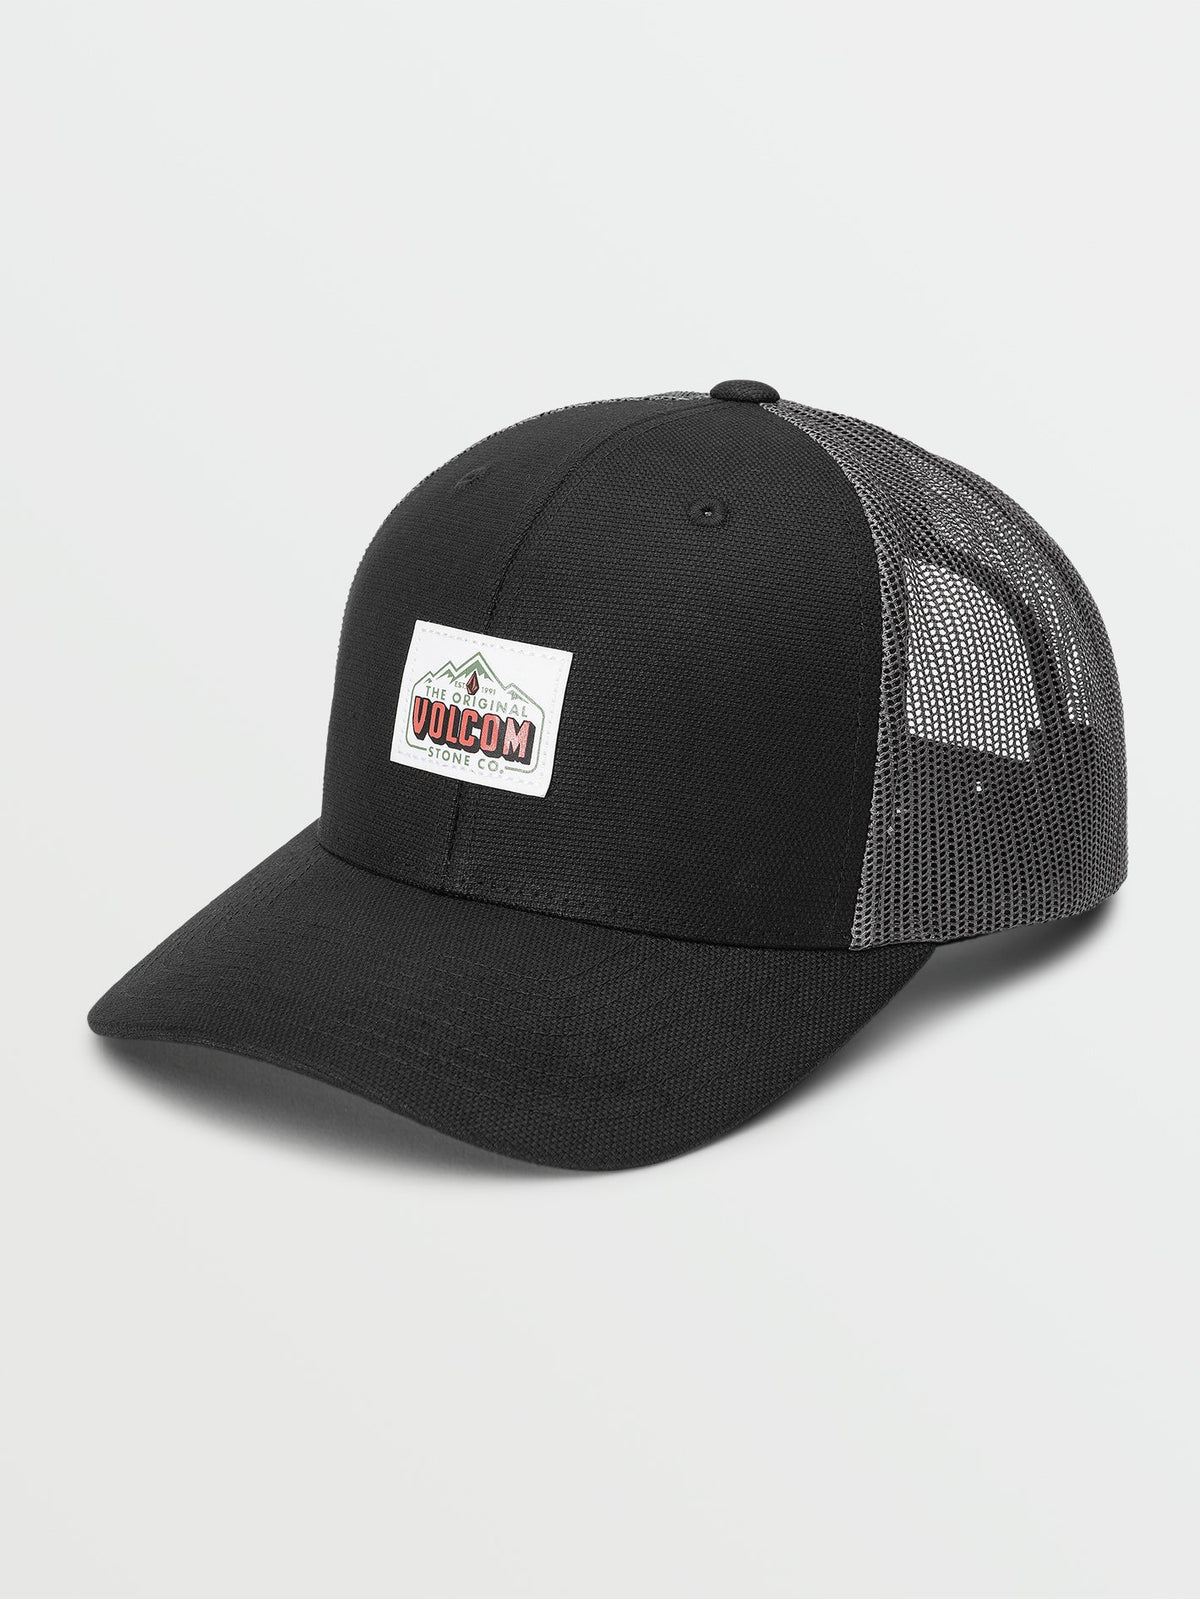 Volcom Good Vibes Men's Trucker Hat Black